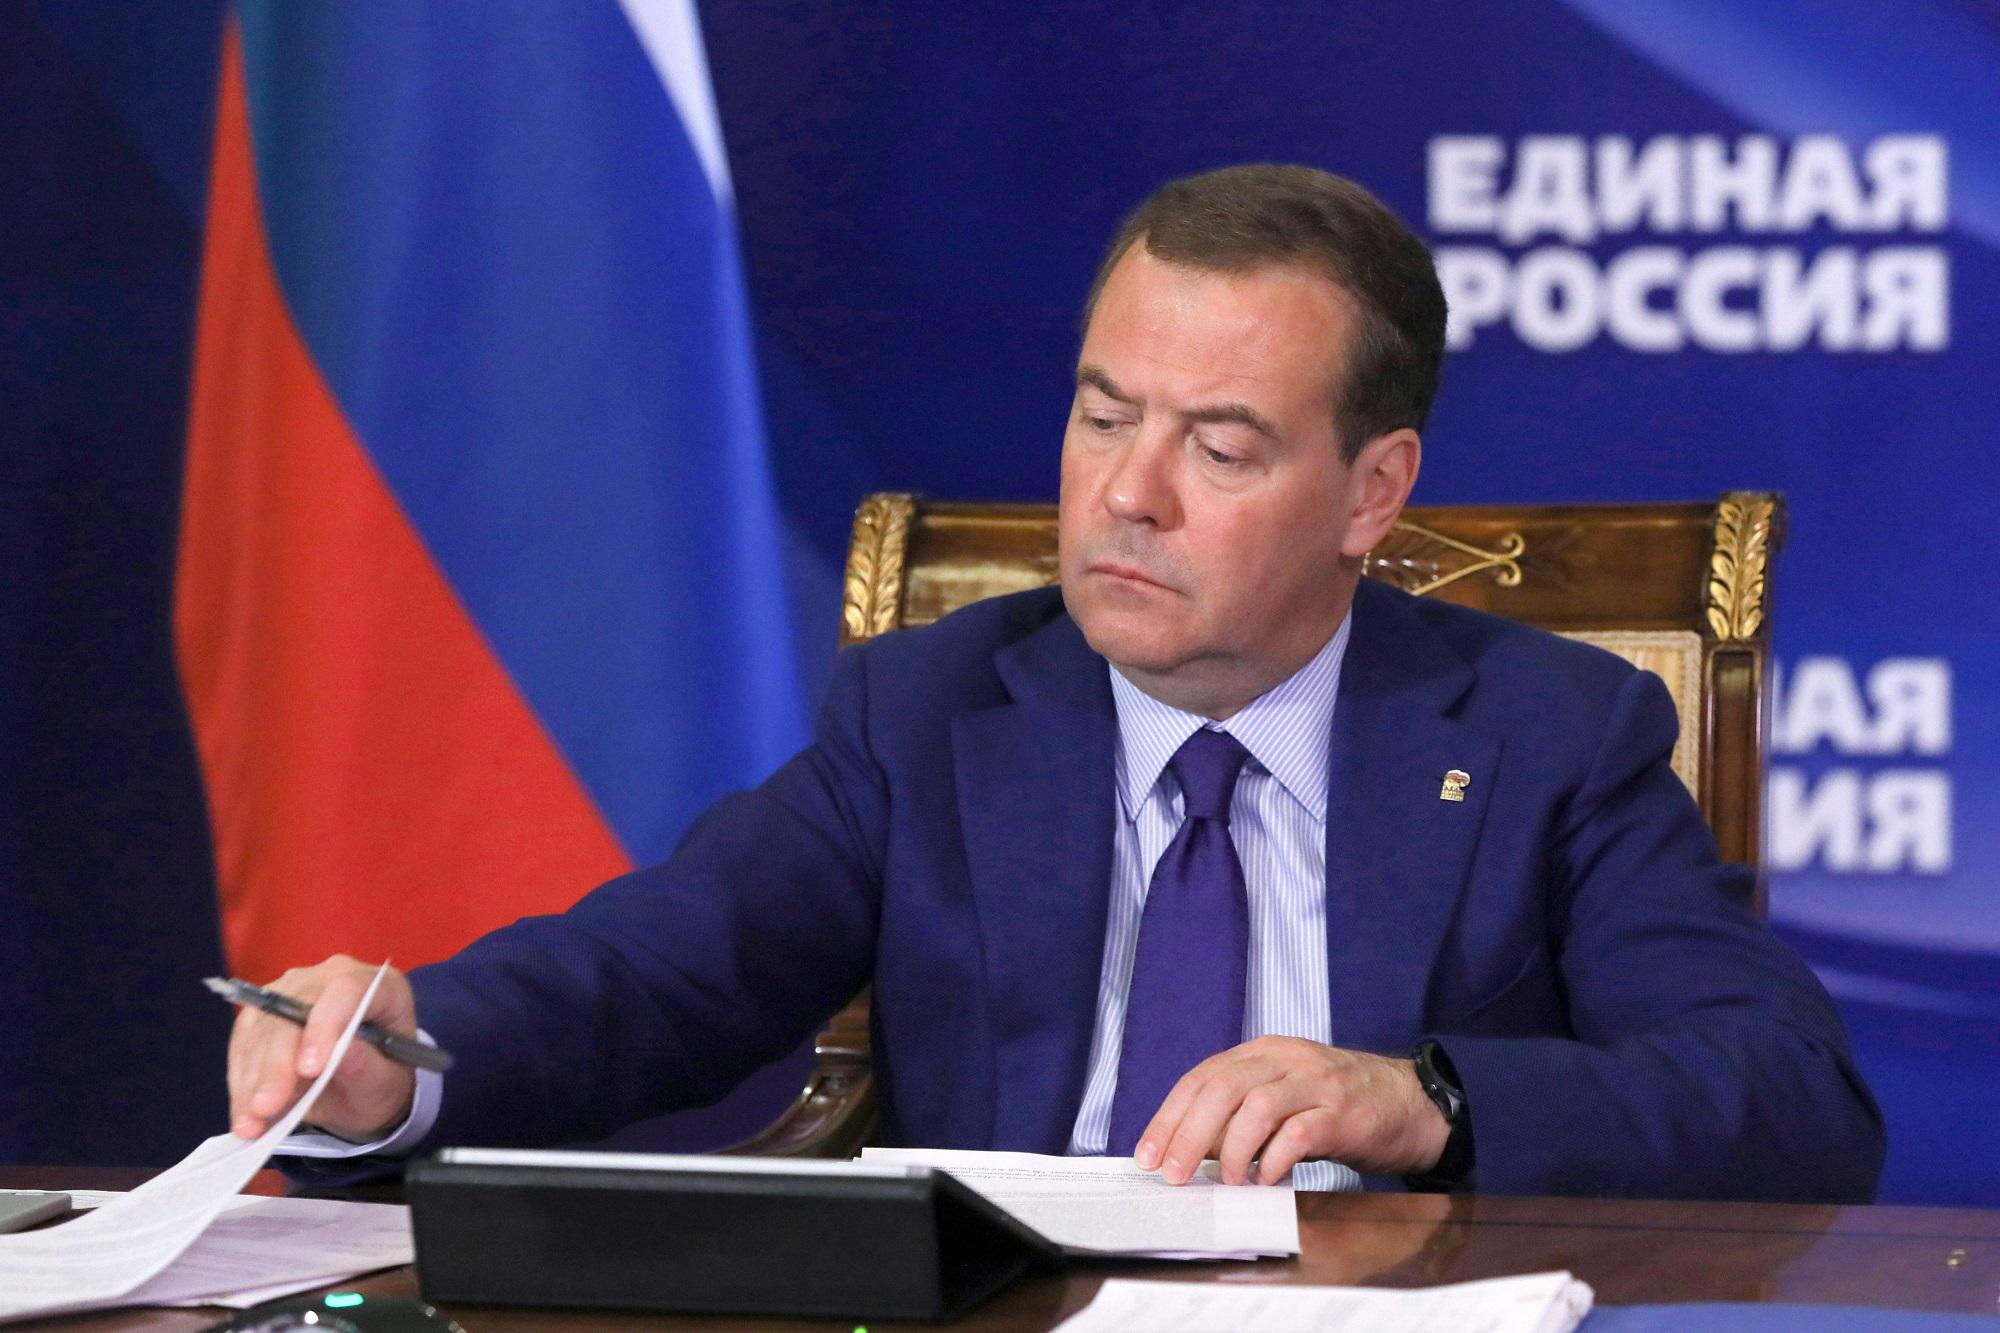 Medvedev continua a straparlare: "Se la Nato invade la Crimea sarebbe terza guerra mondiale"